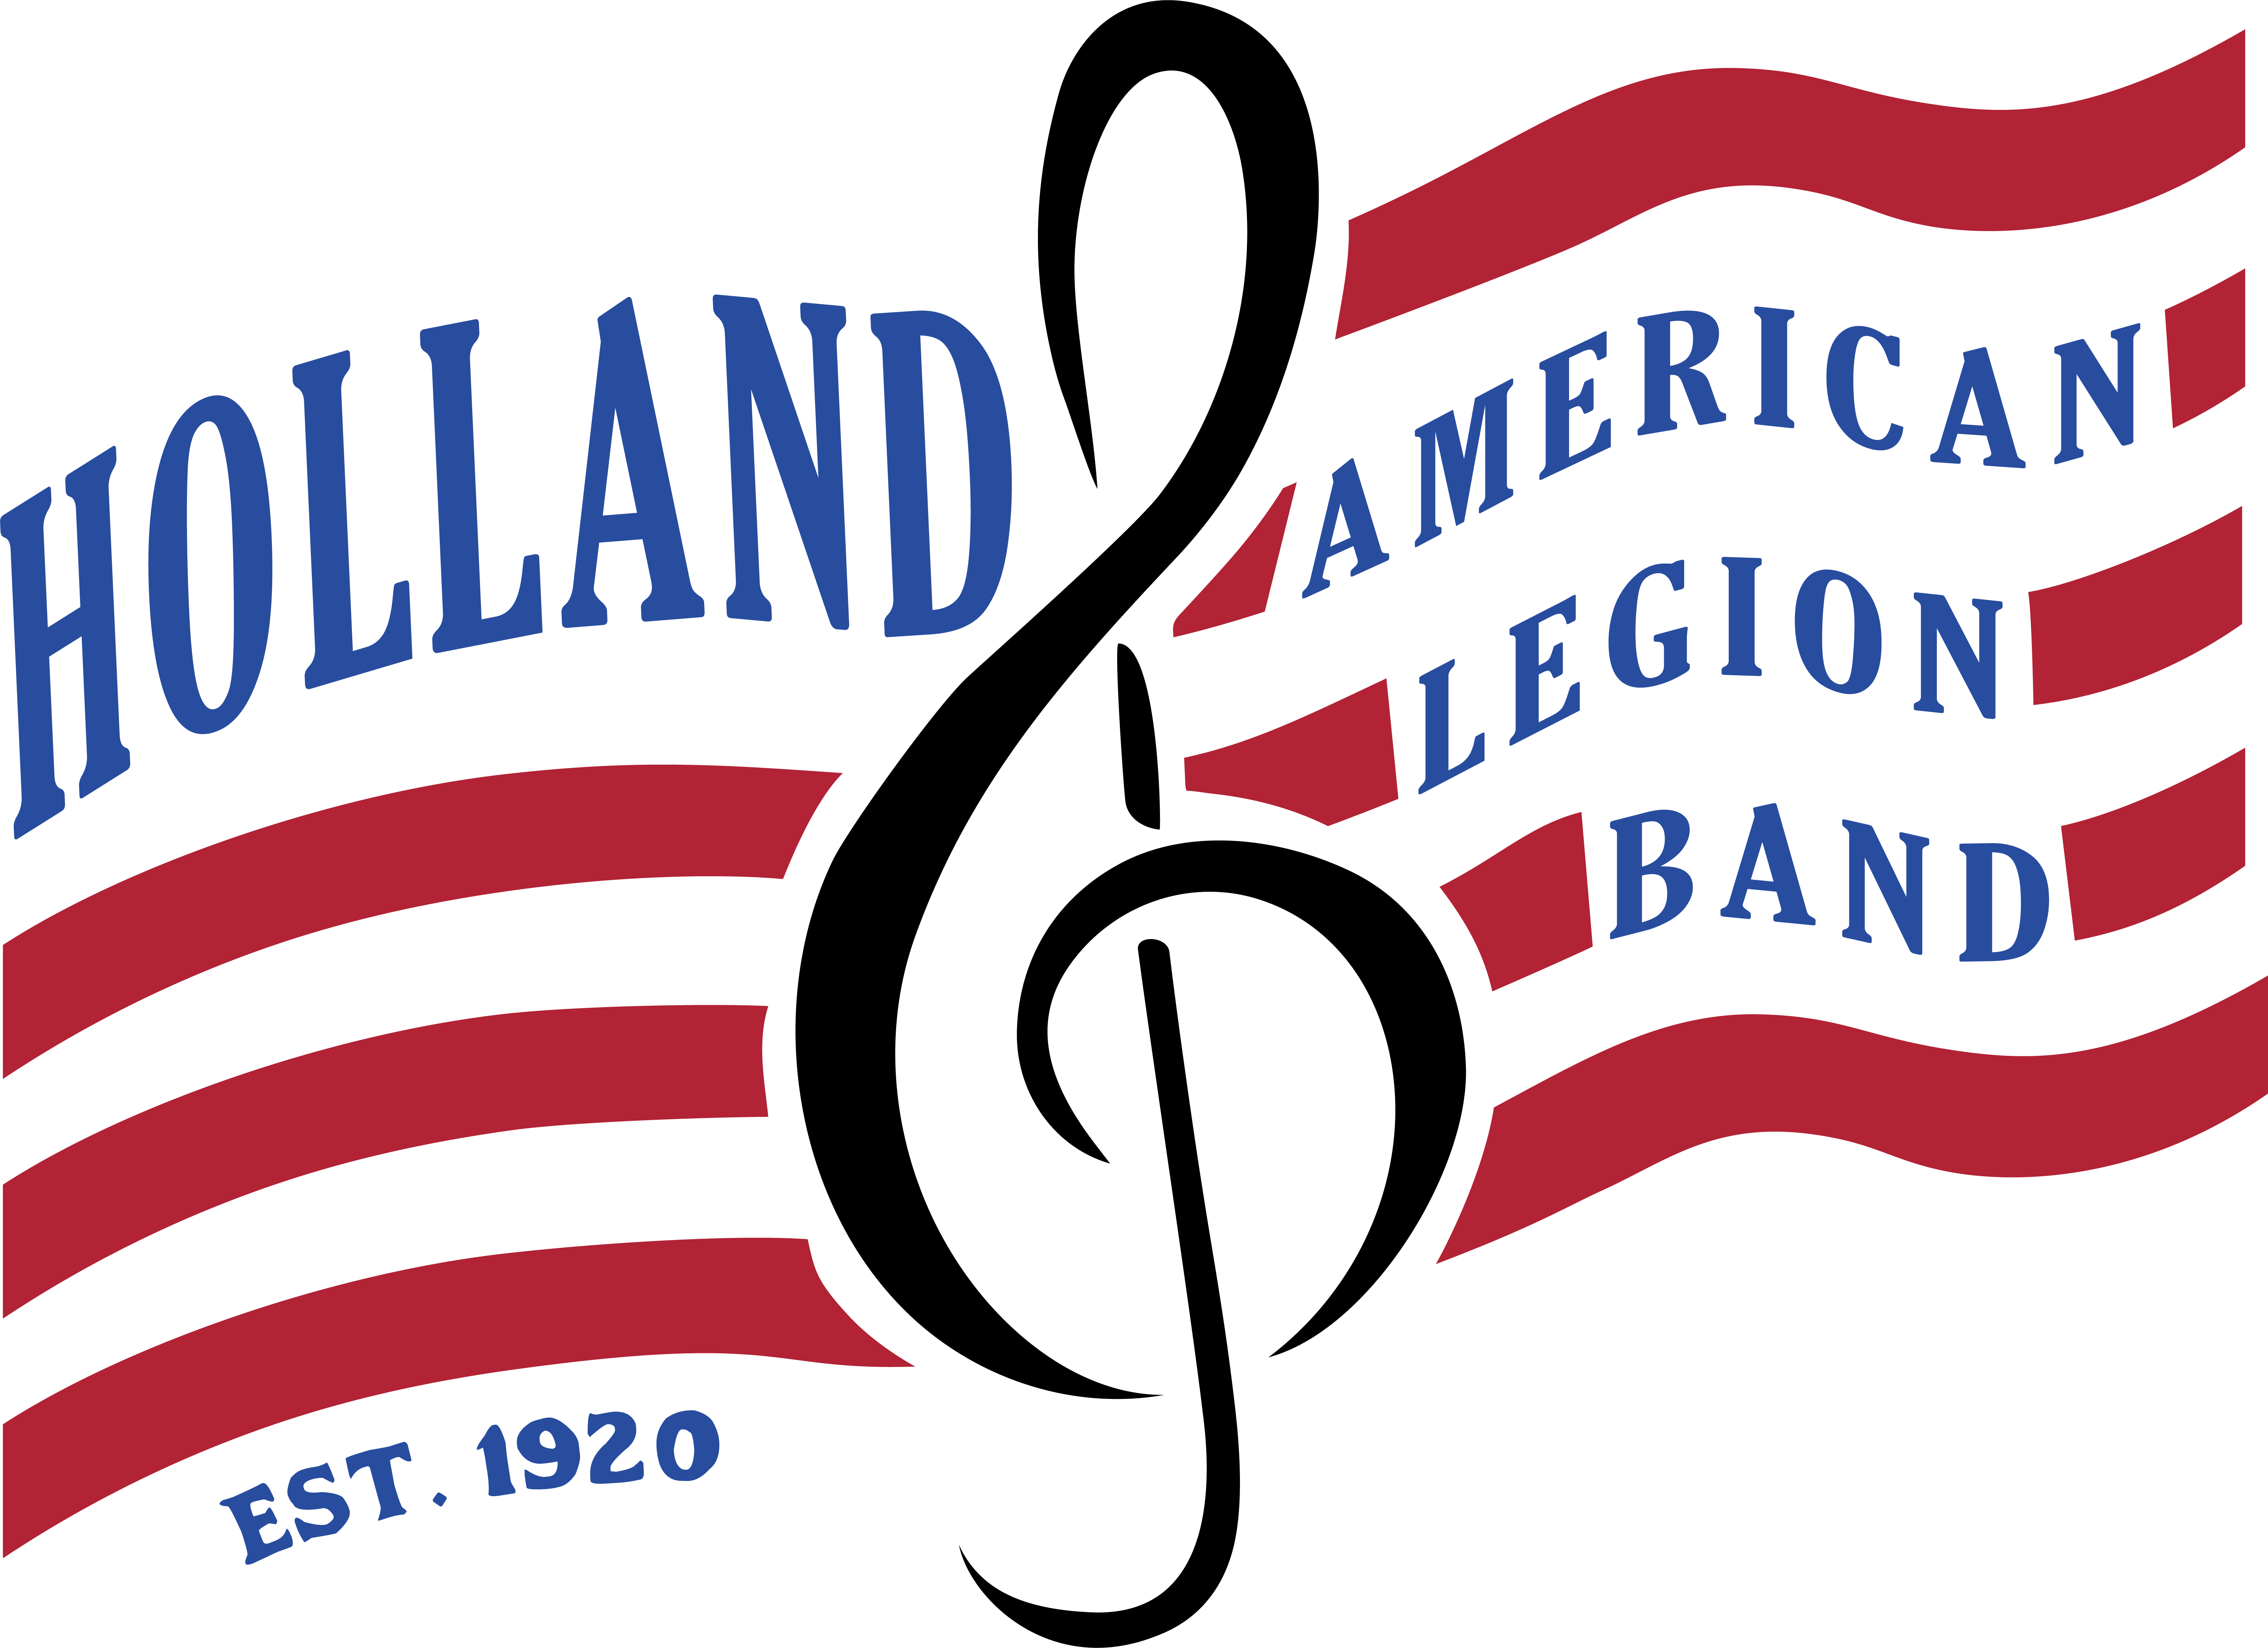 Holland American Legion Band logo